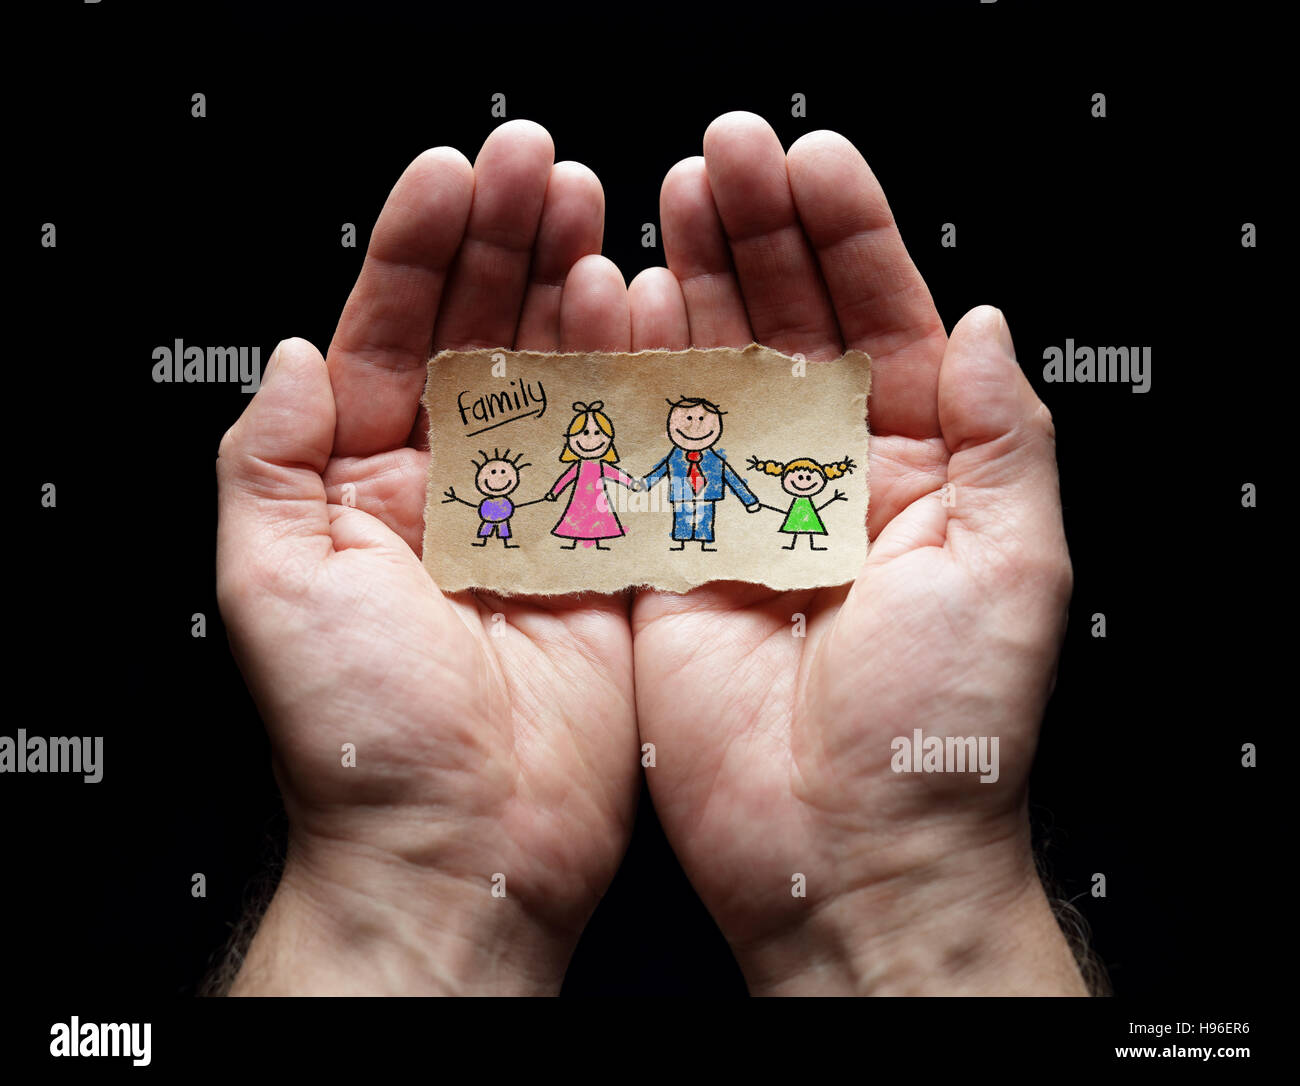 Soins de la famille avec la protection des creux des mains, un concept pour l'amour, aide, assistance, sécurité et soins Banque D'Images